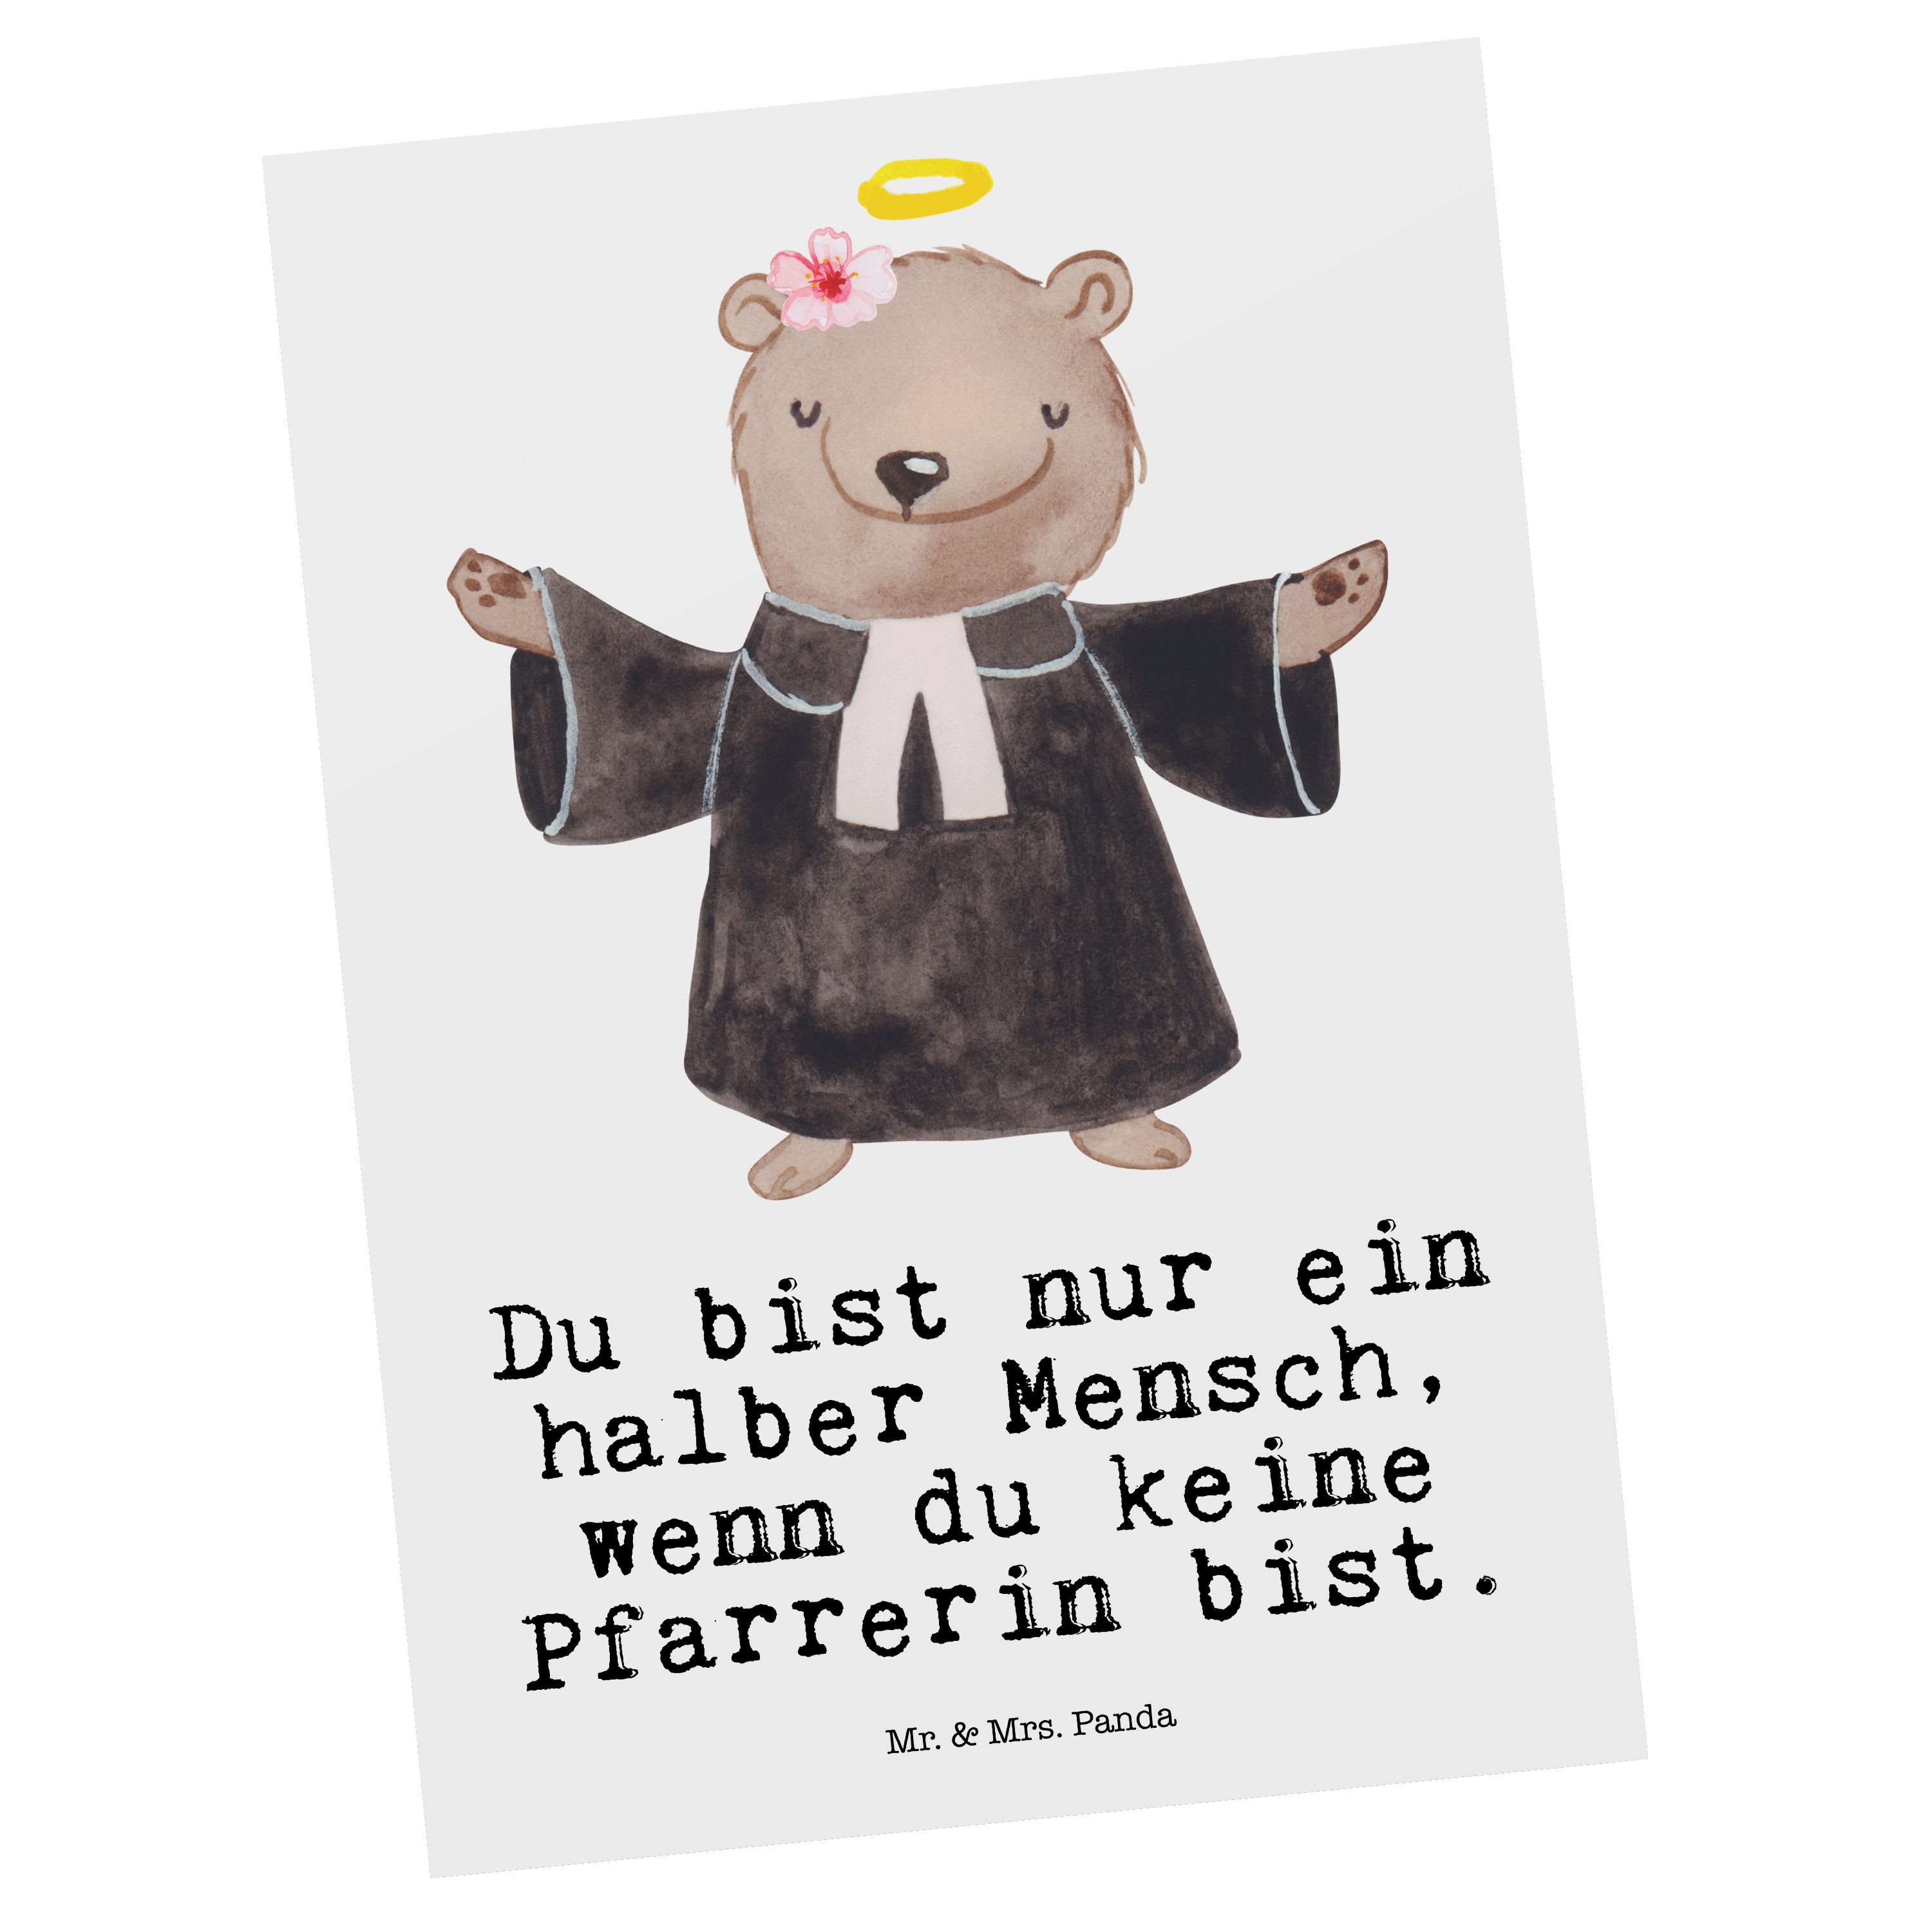 Mr. & Mrs. Panda Postkarte Pfarrerin mit Herz - Weiß - Geschenk, Dienerin Gottes Geistliche, Ein